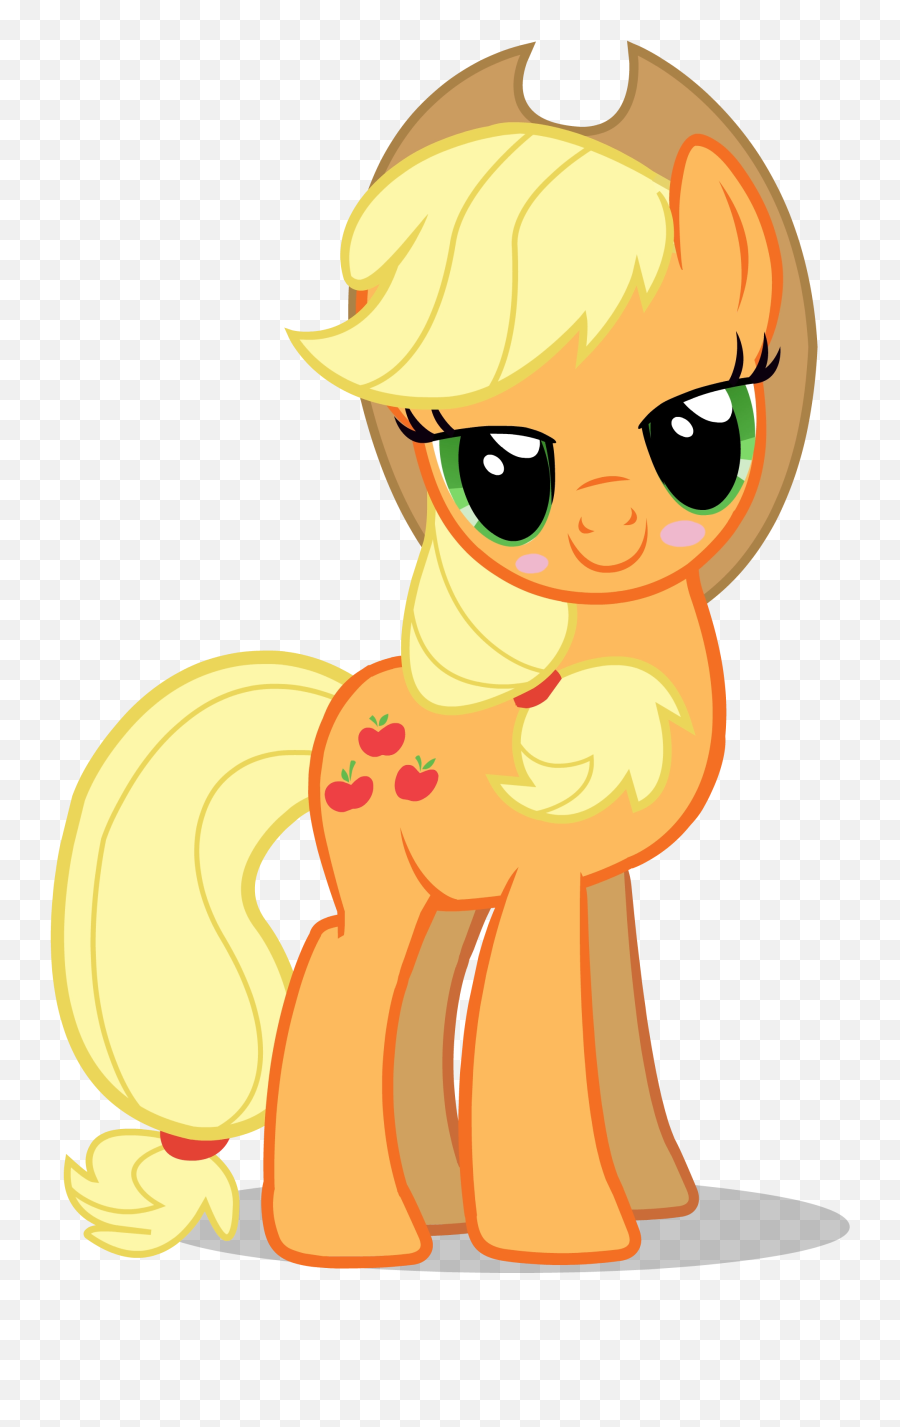 Download Free Png My Little Pony - Applejack Blushing The Emoji,Applejack Transparent